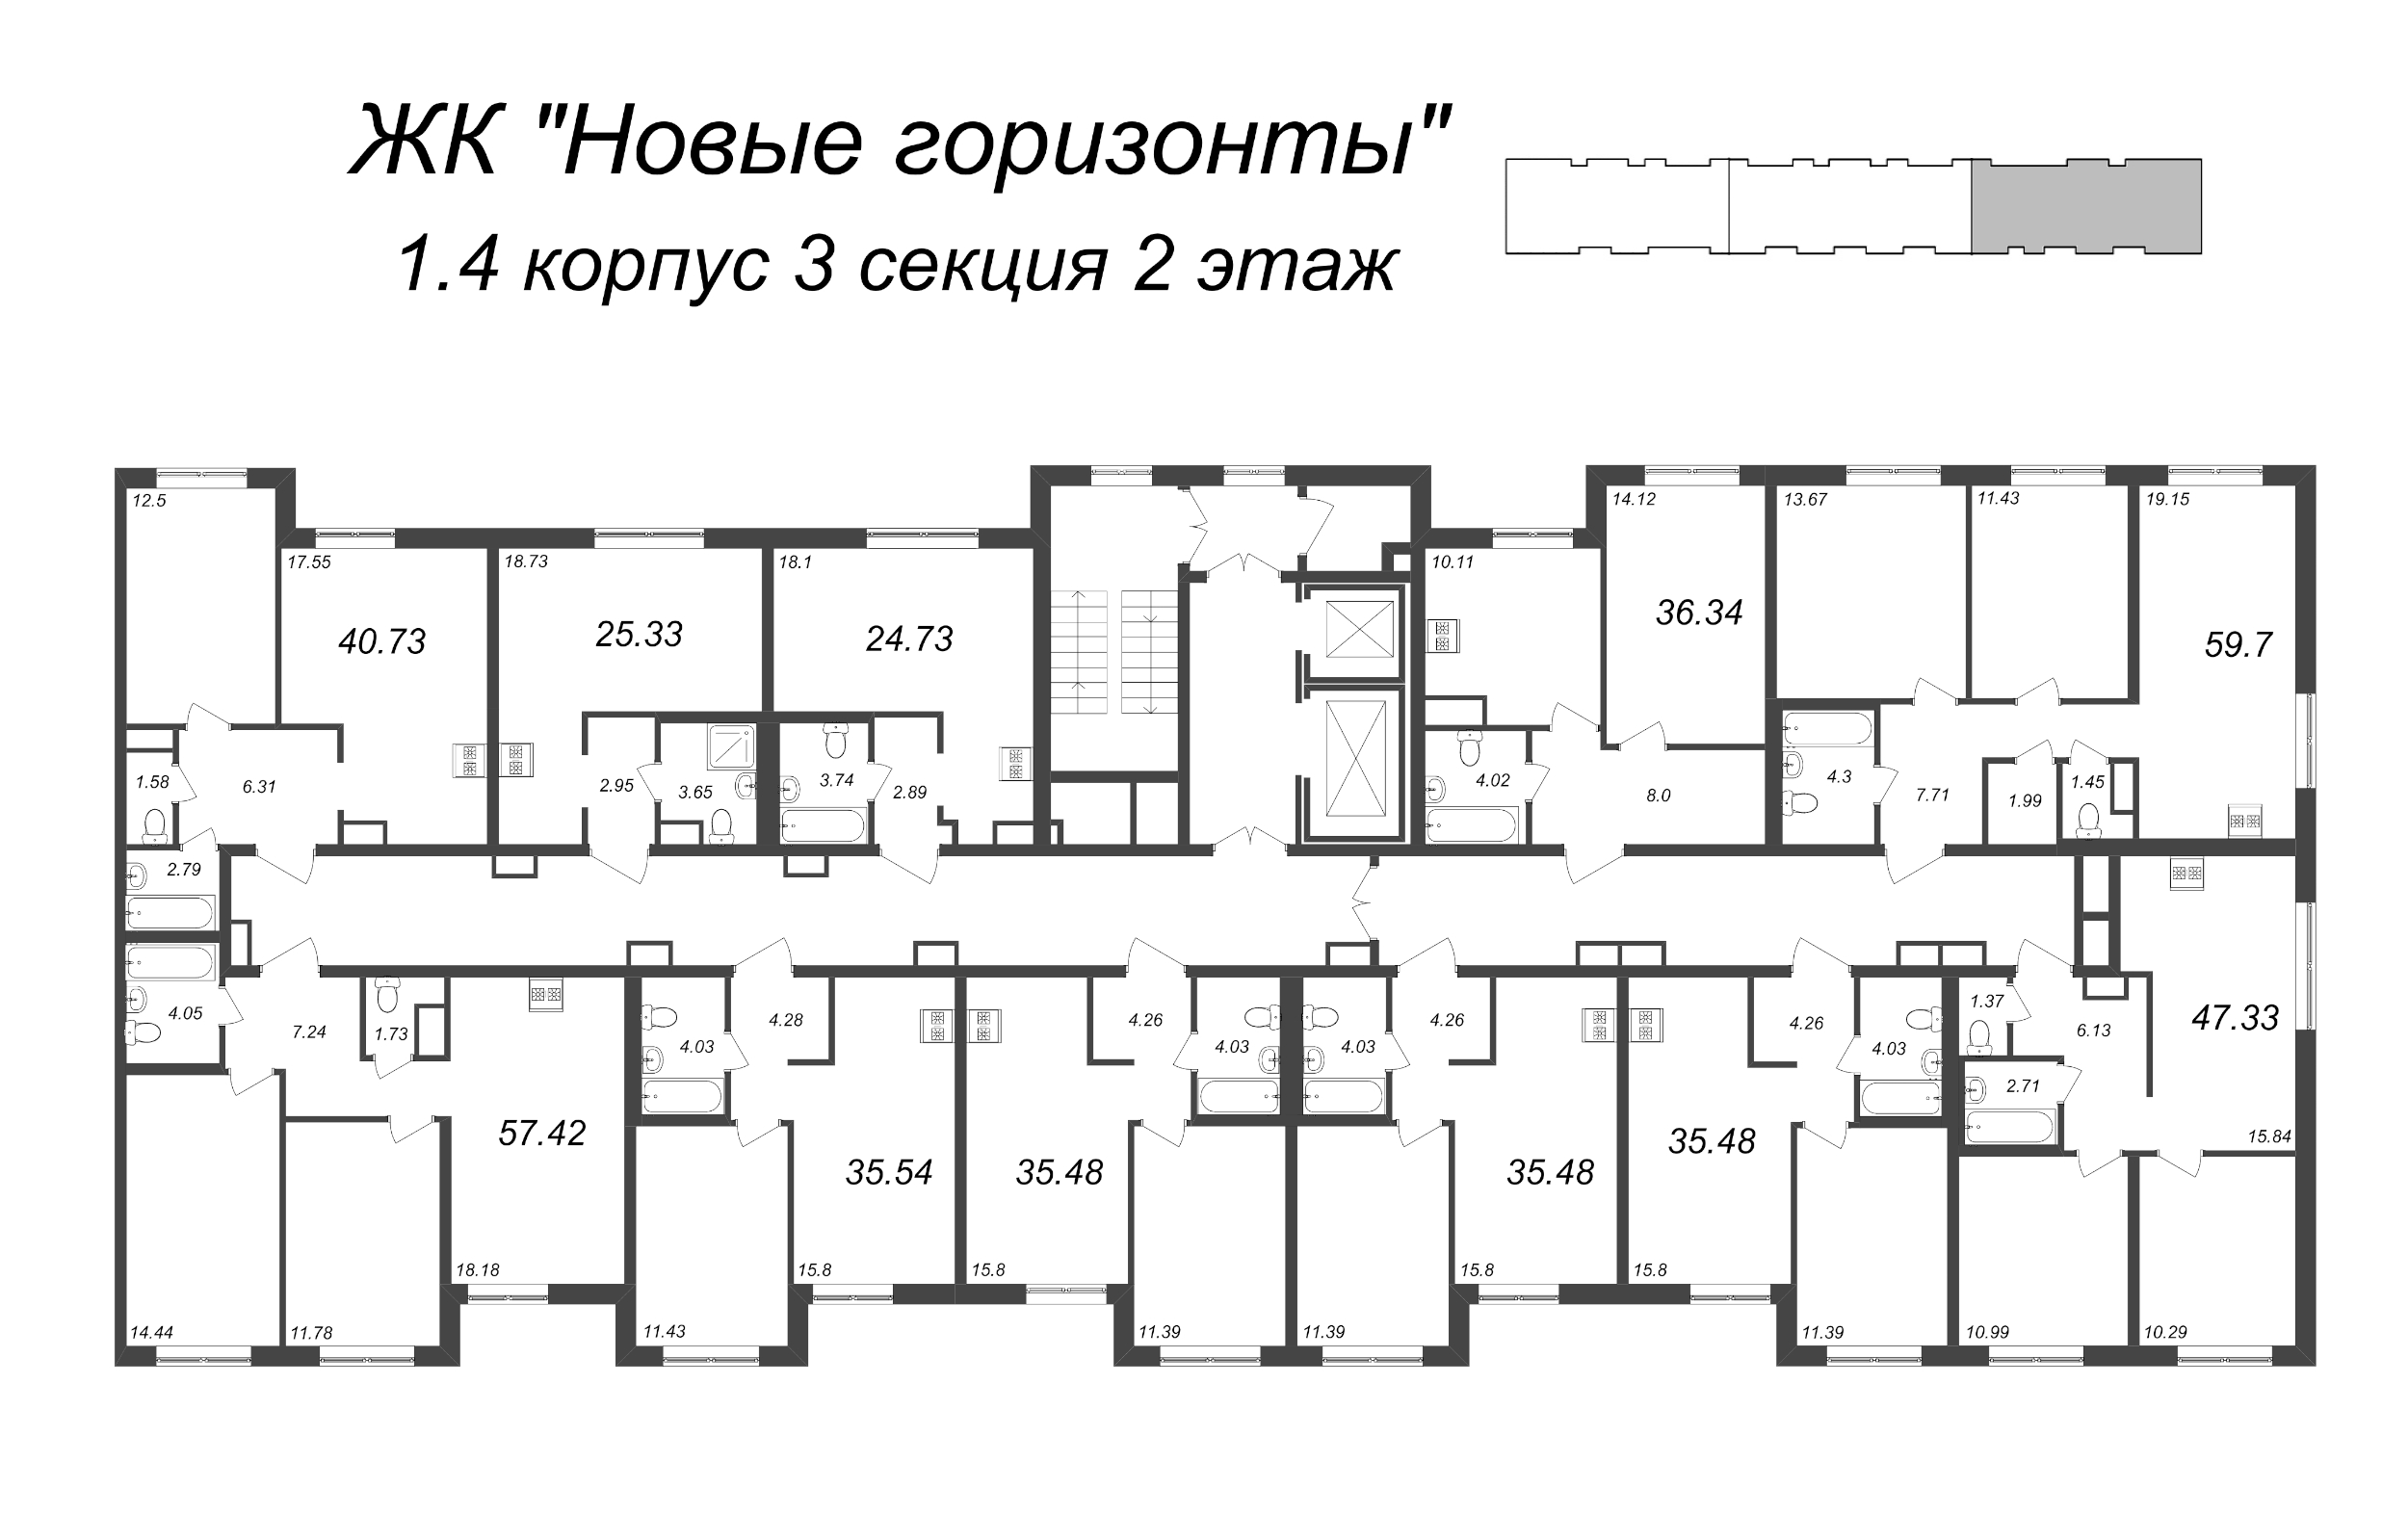 Квартира-студия, 24.73 м² в ЖК "Новые горизонты" - планировка этажа